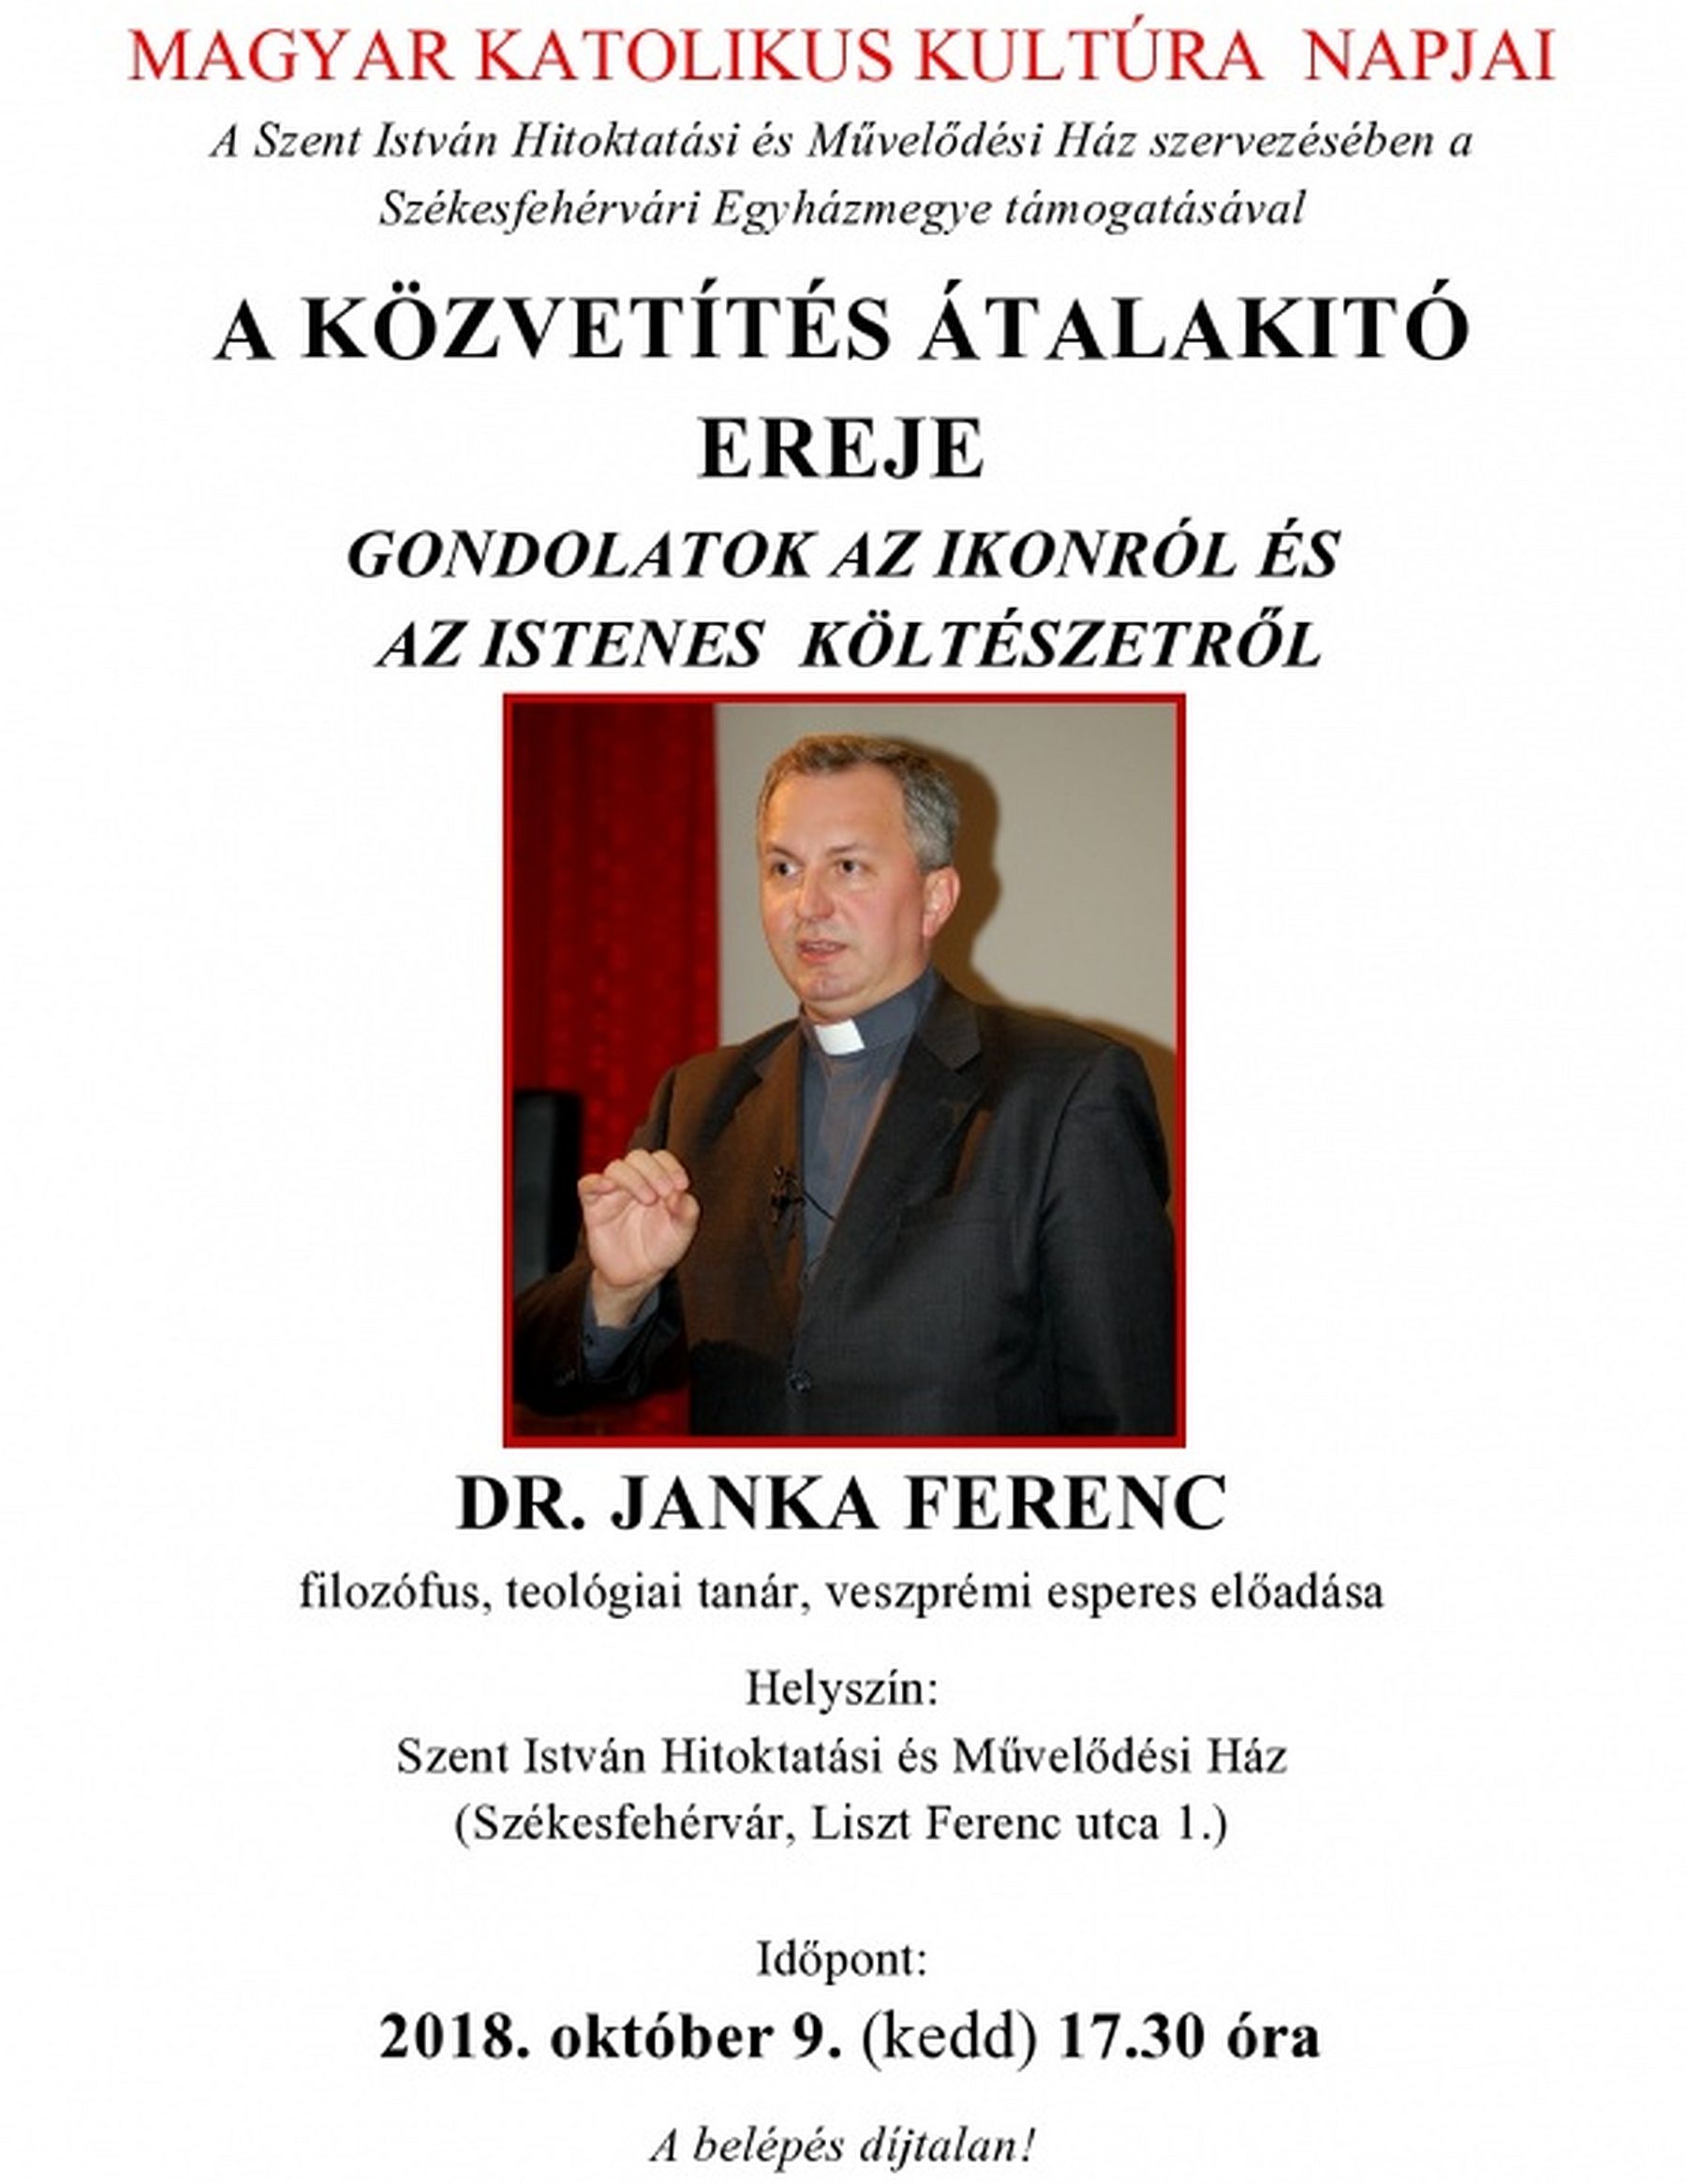 Gondolatok az ikonokról és az istenes költészetről - Janka Ferenc előadása